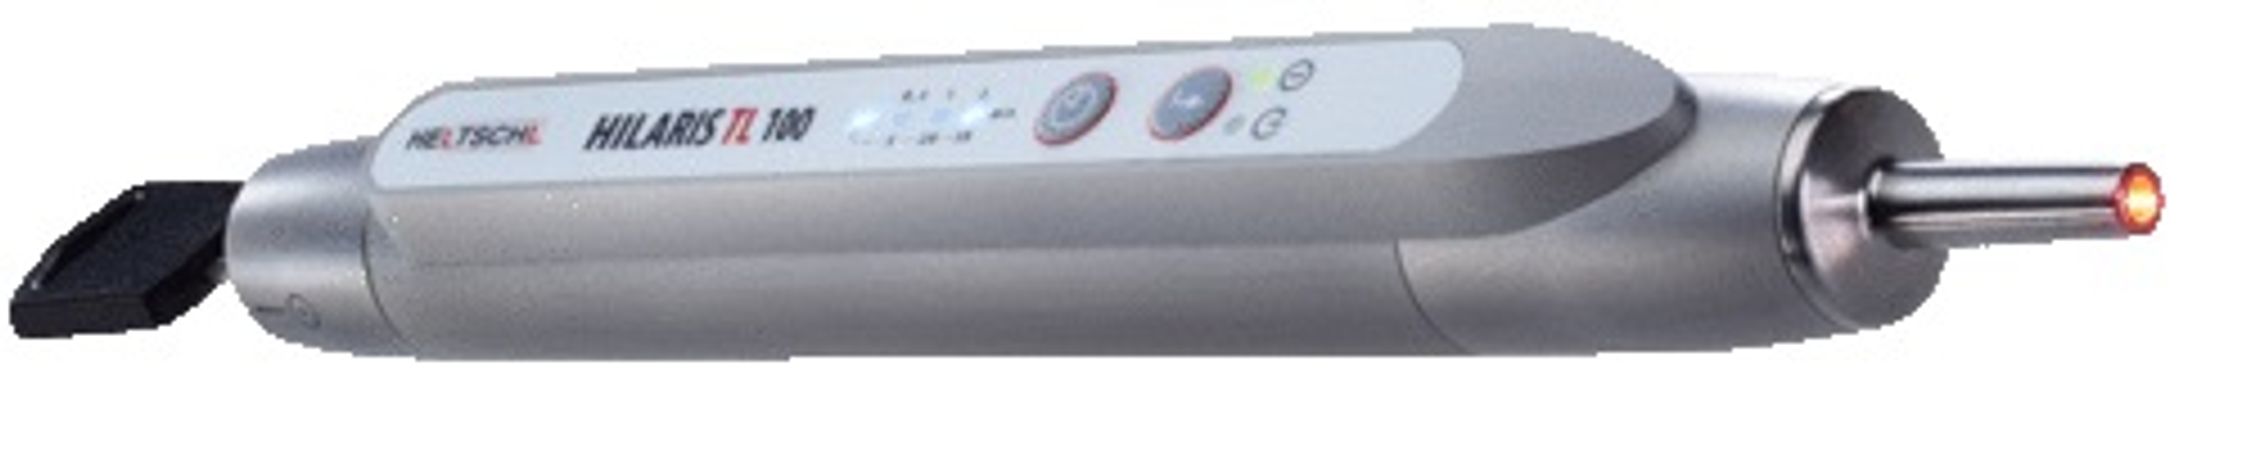 Hilaris - Model TL - Medical Laser Device